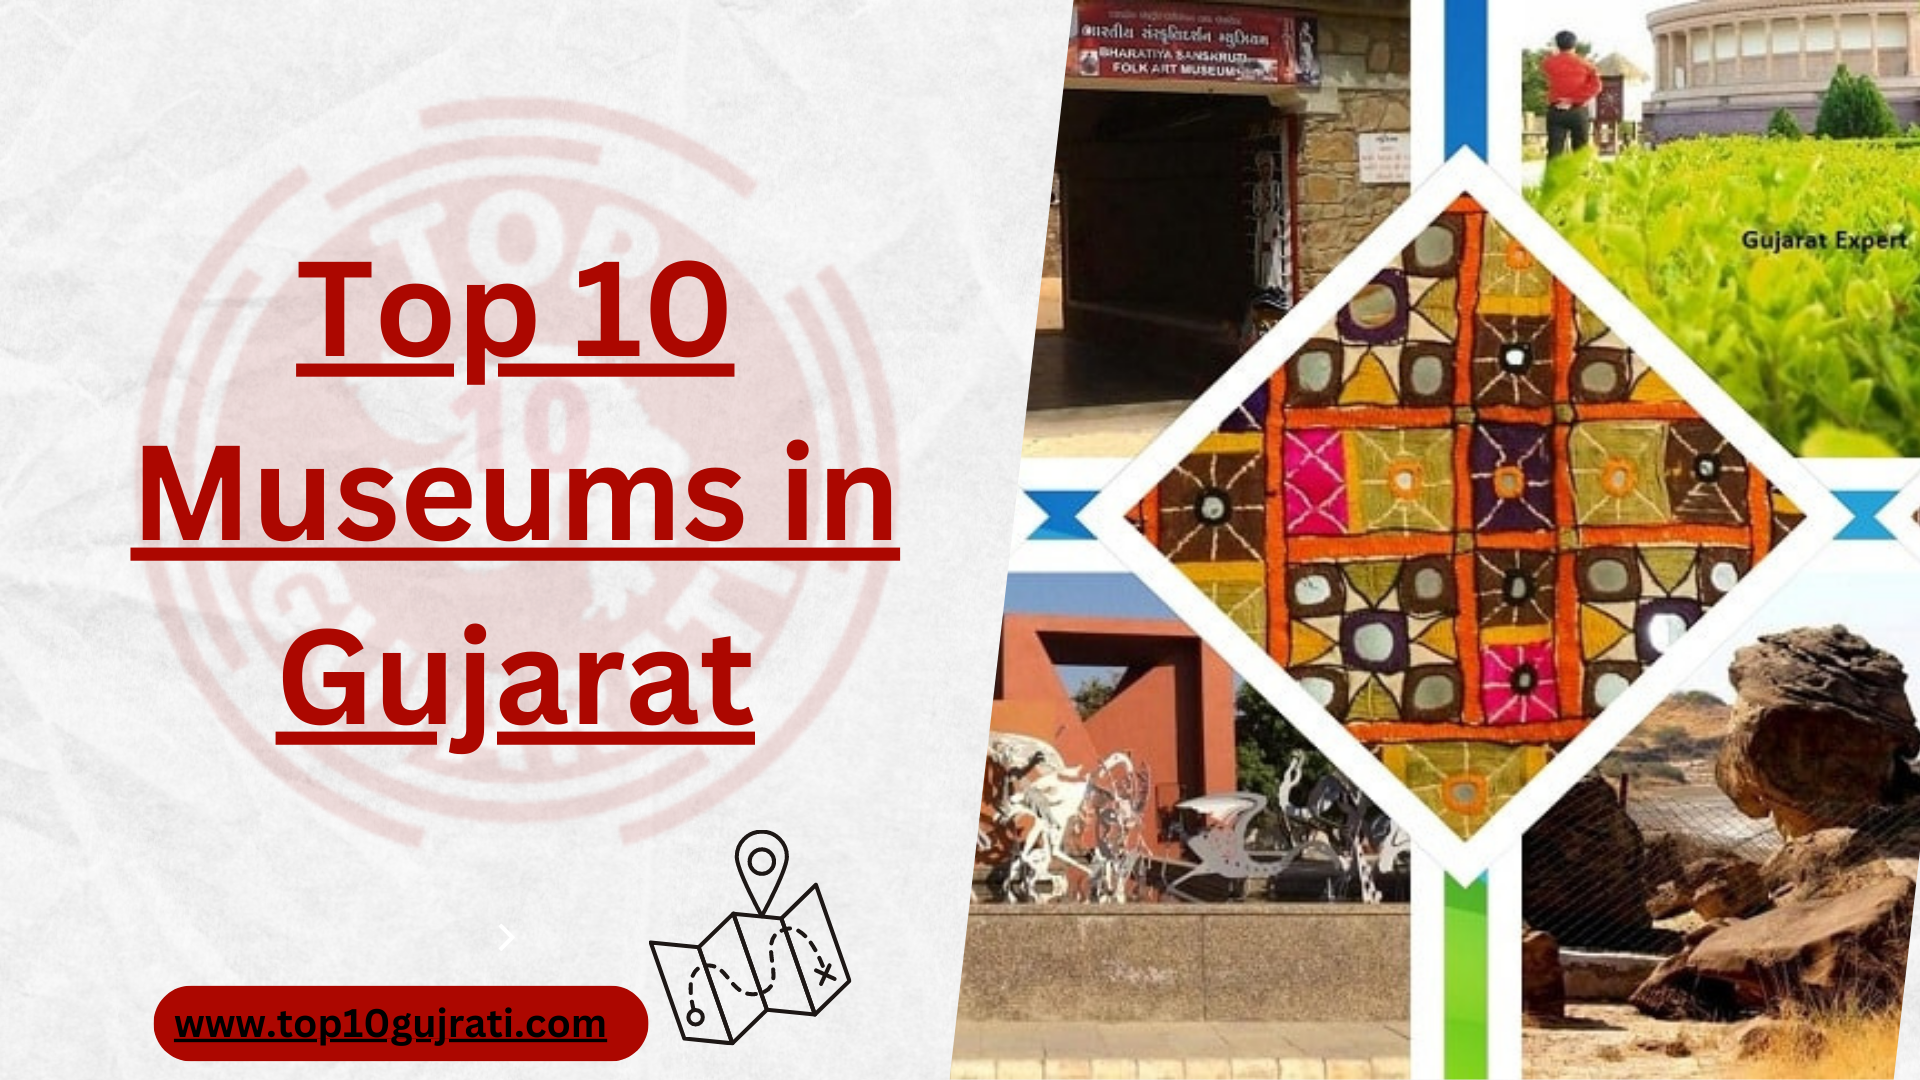 Top 10 Museums in Gujarat